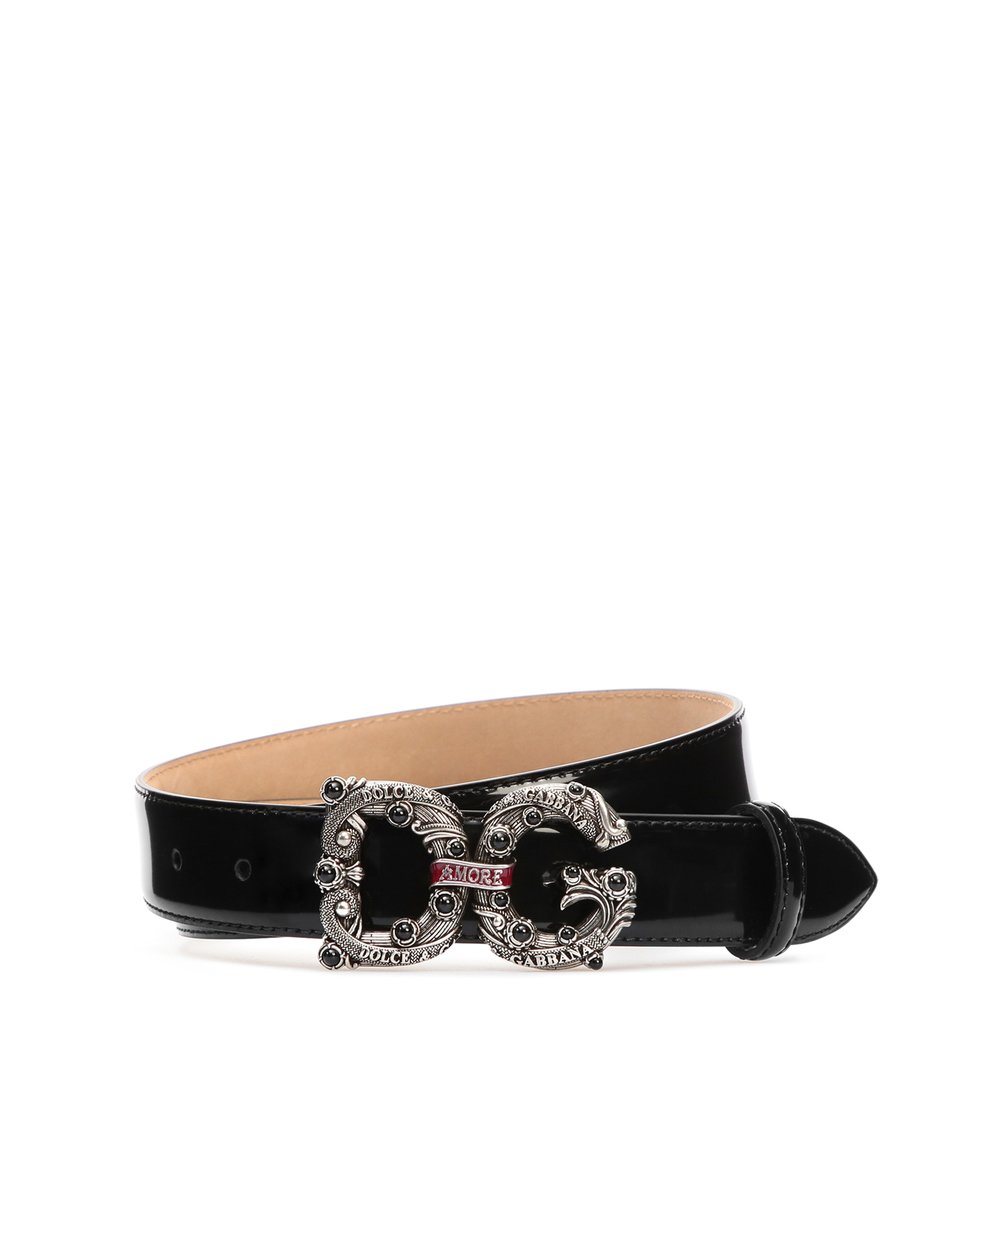 Кожаный ремень	 Dolce&Gabbana BE1335-AW080, черный цвет • Купить в интернет-магазине Kameron